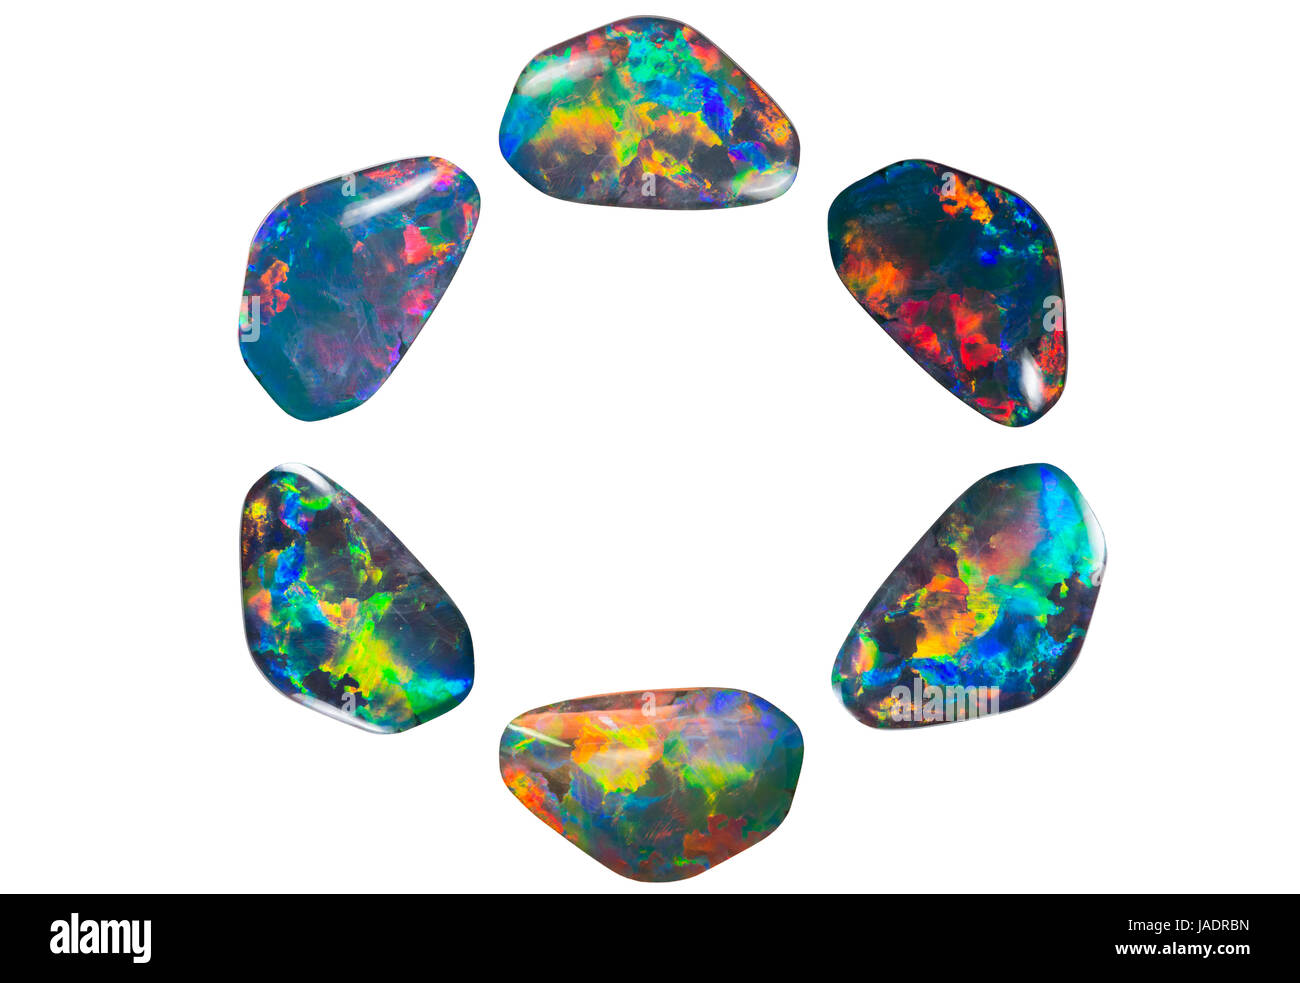 Ein Kreis aus freigestellten Opalen mit komplettem Farbspektrum Stock Photo